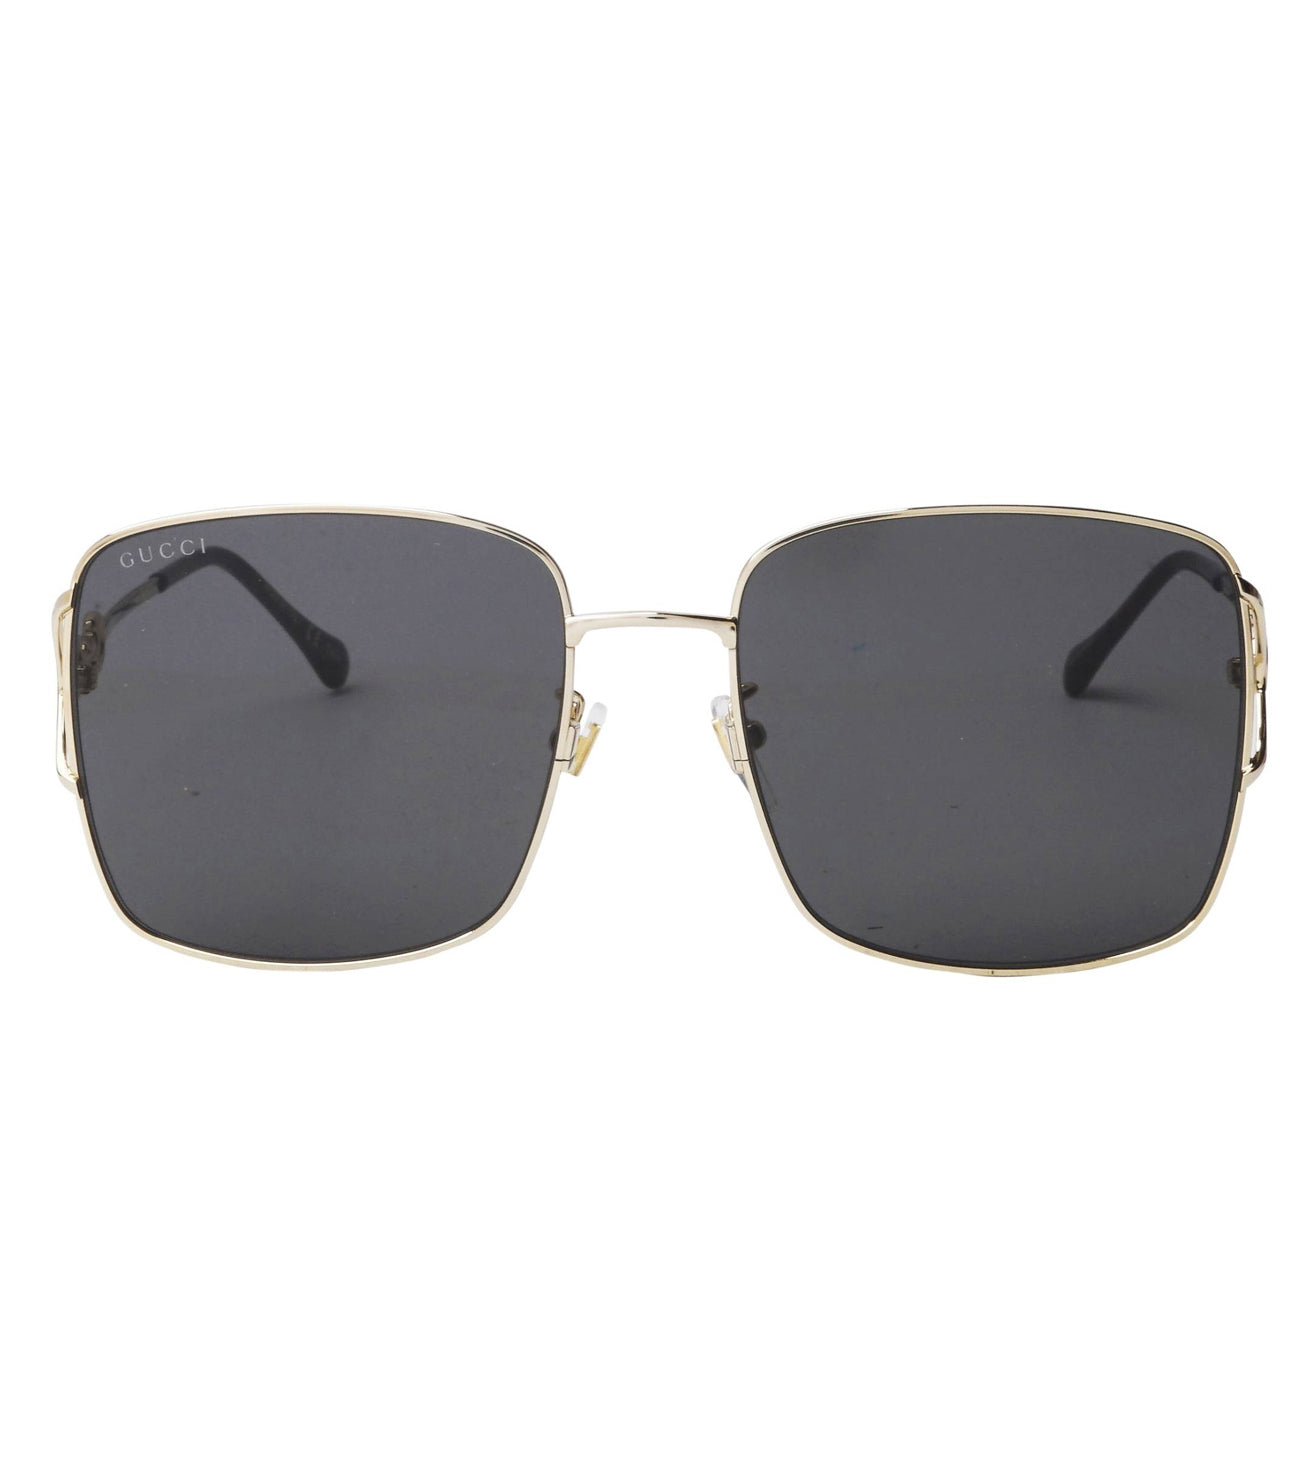 Gucci Women's Grey Square Sunglasses